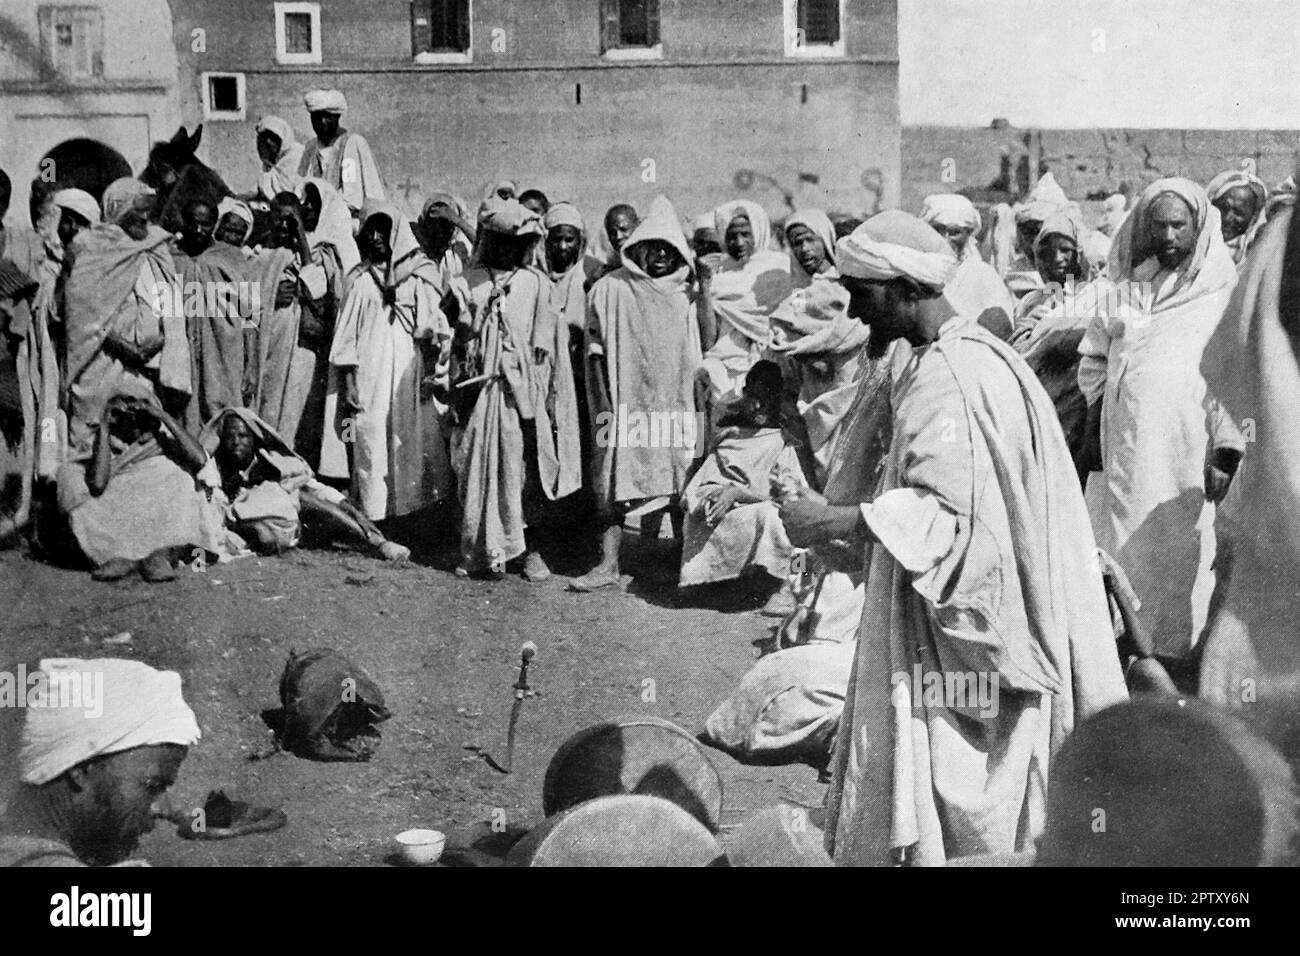 La vie au Maroc, Afrique, c1905. Groupe autour des artistes interprètes à Marrakech. Des artistes de rue entourés de spectateurs. De la photo de A. Lennox. Banque D'Images